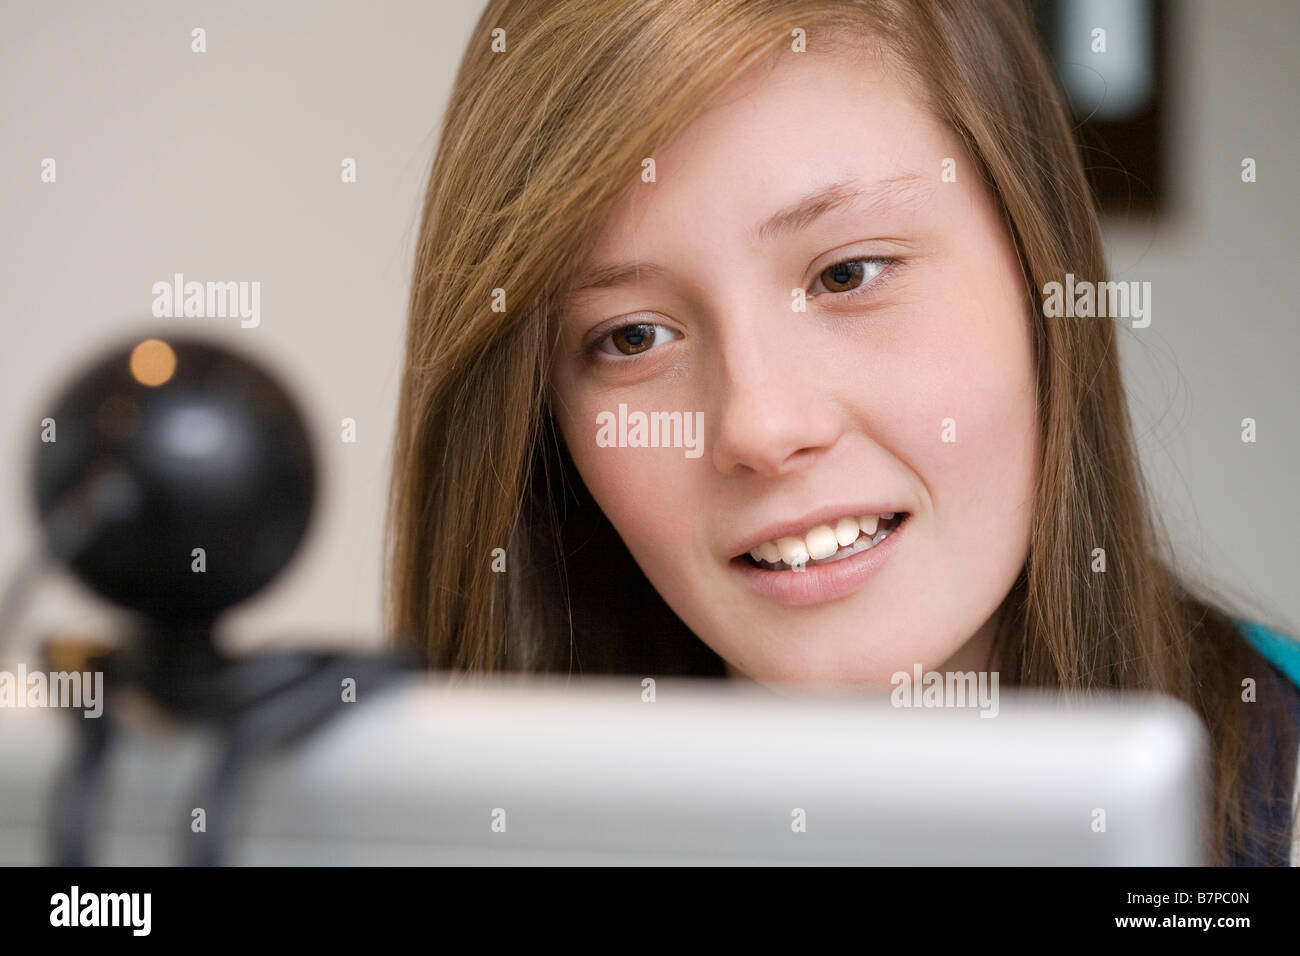 Jeune adolescente à l'aide d'un ordinateur portable avec web cam Banque D'Images